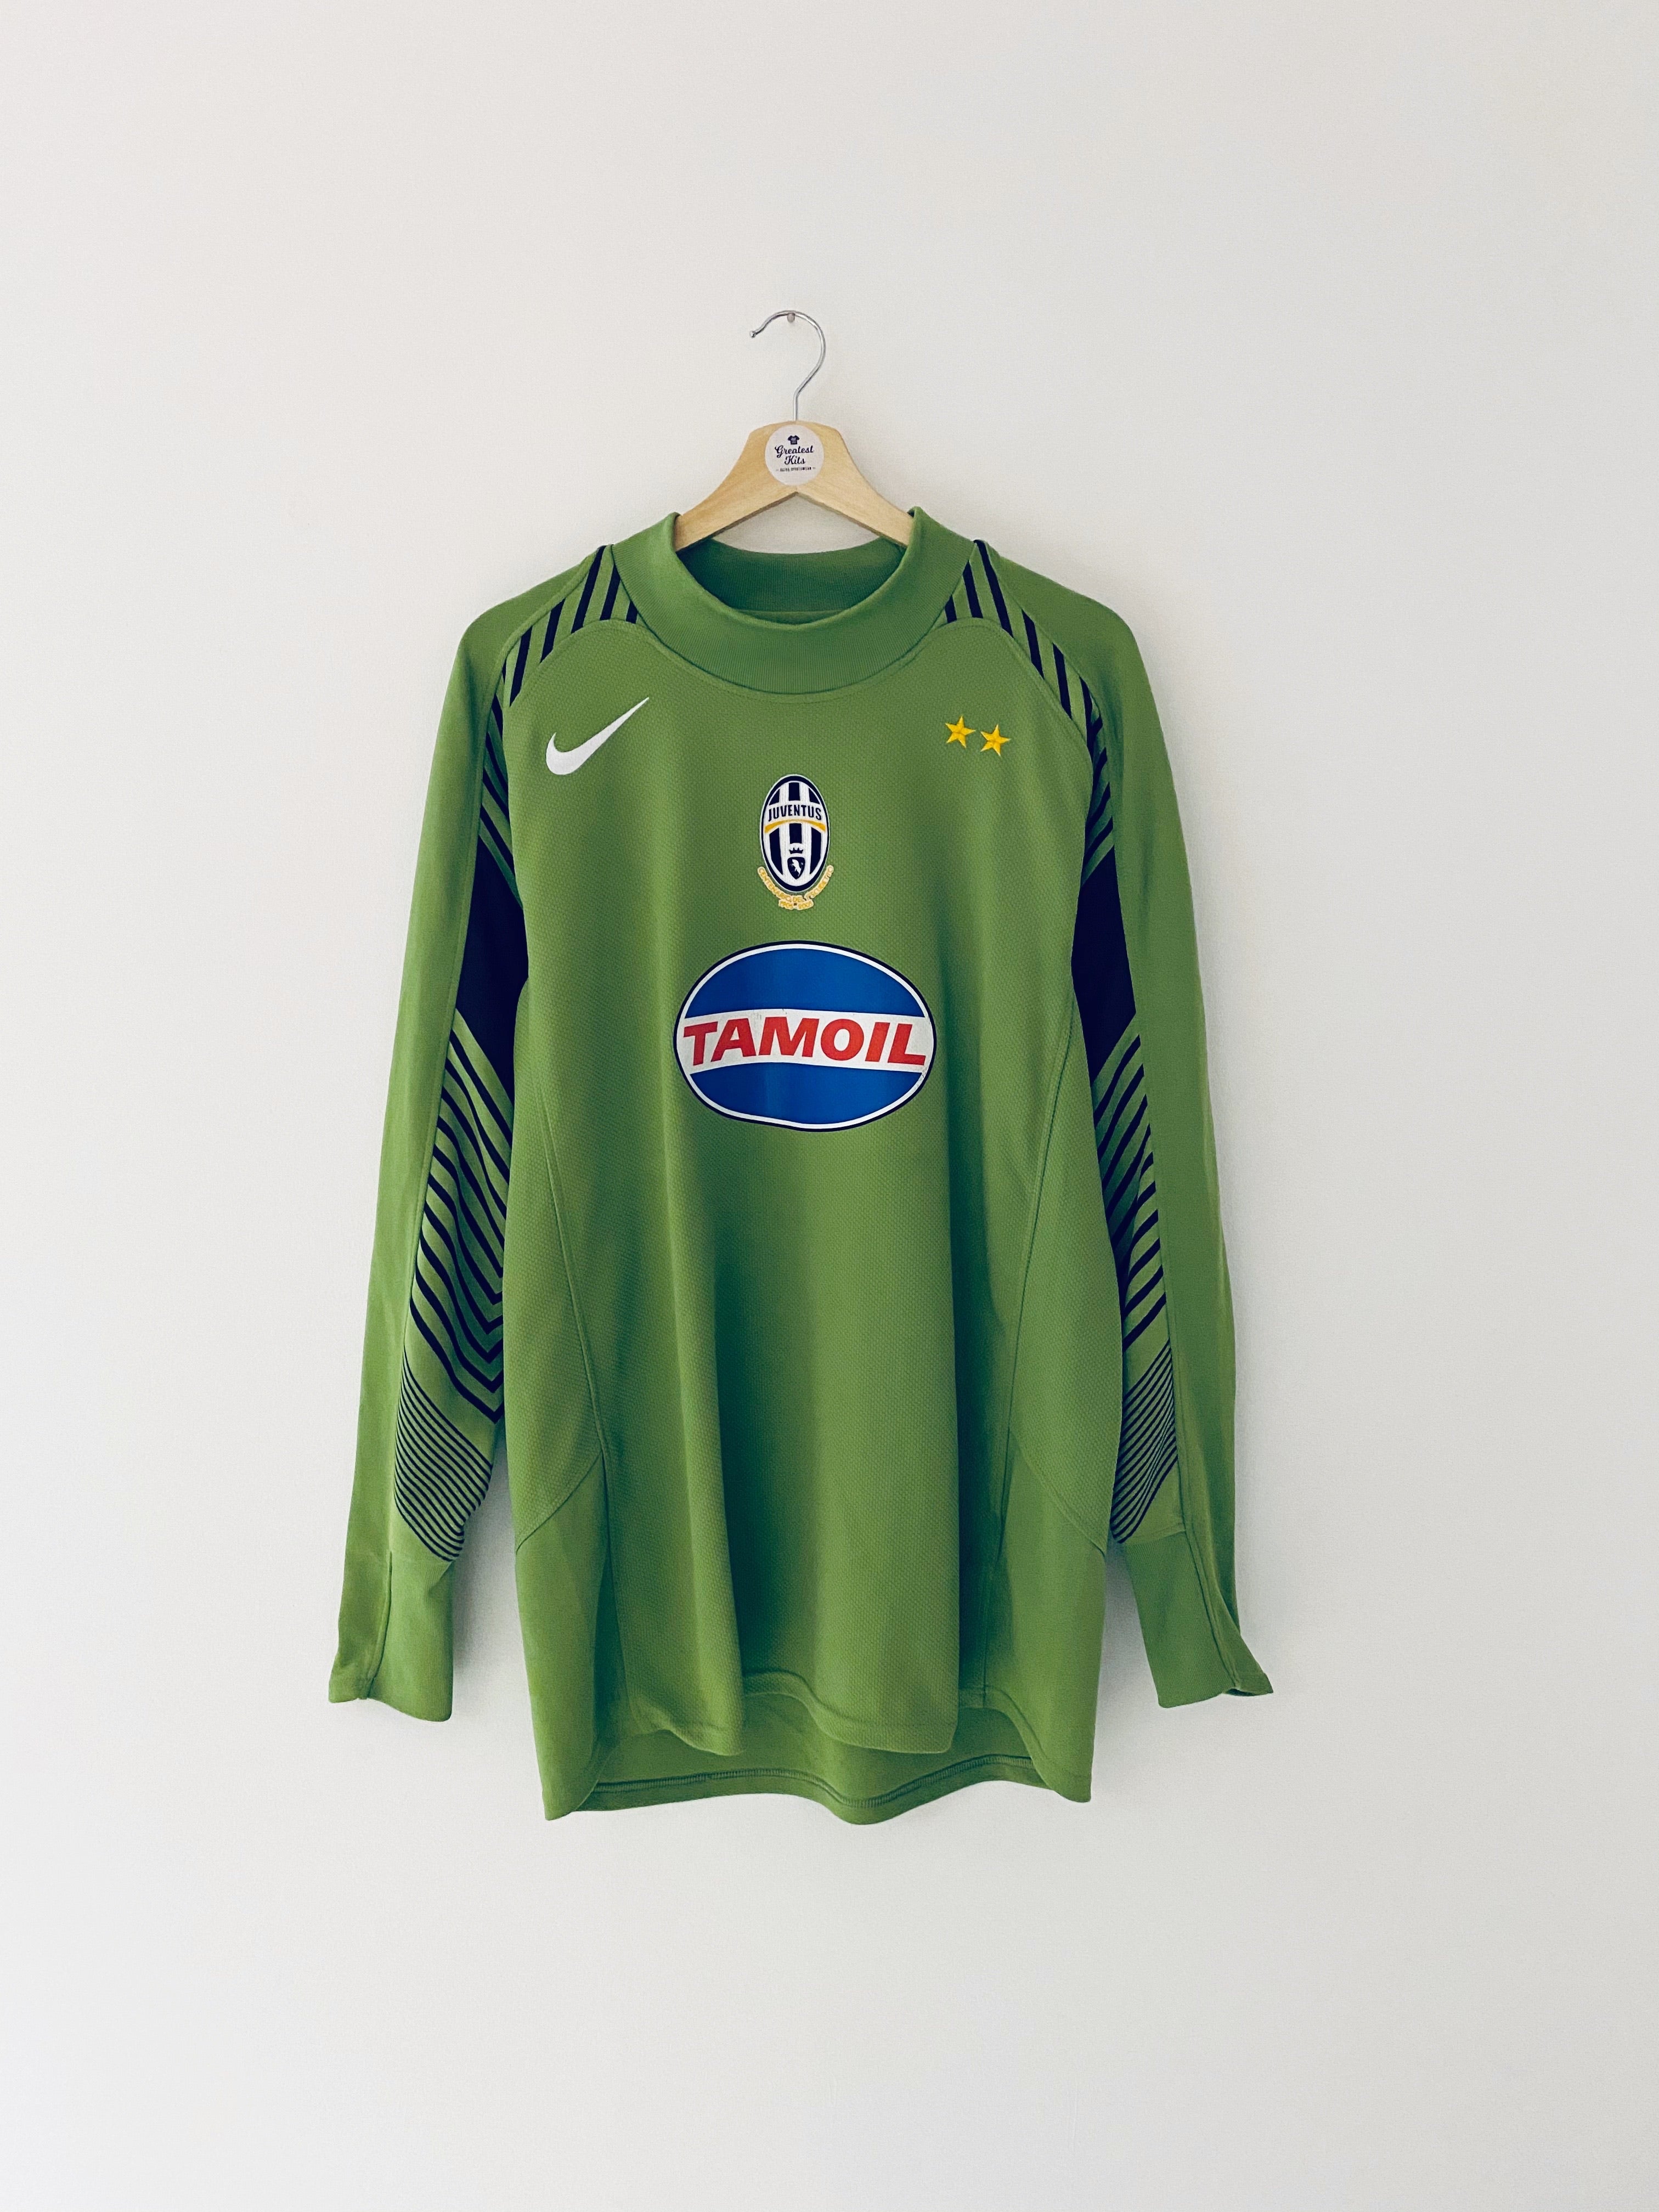 Maillot Juventus GK 2005/06 (L) 8.5/10